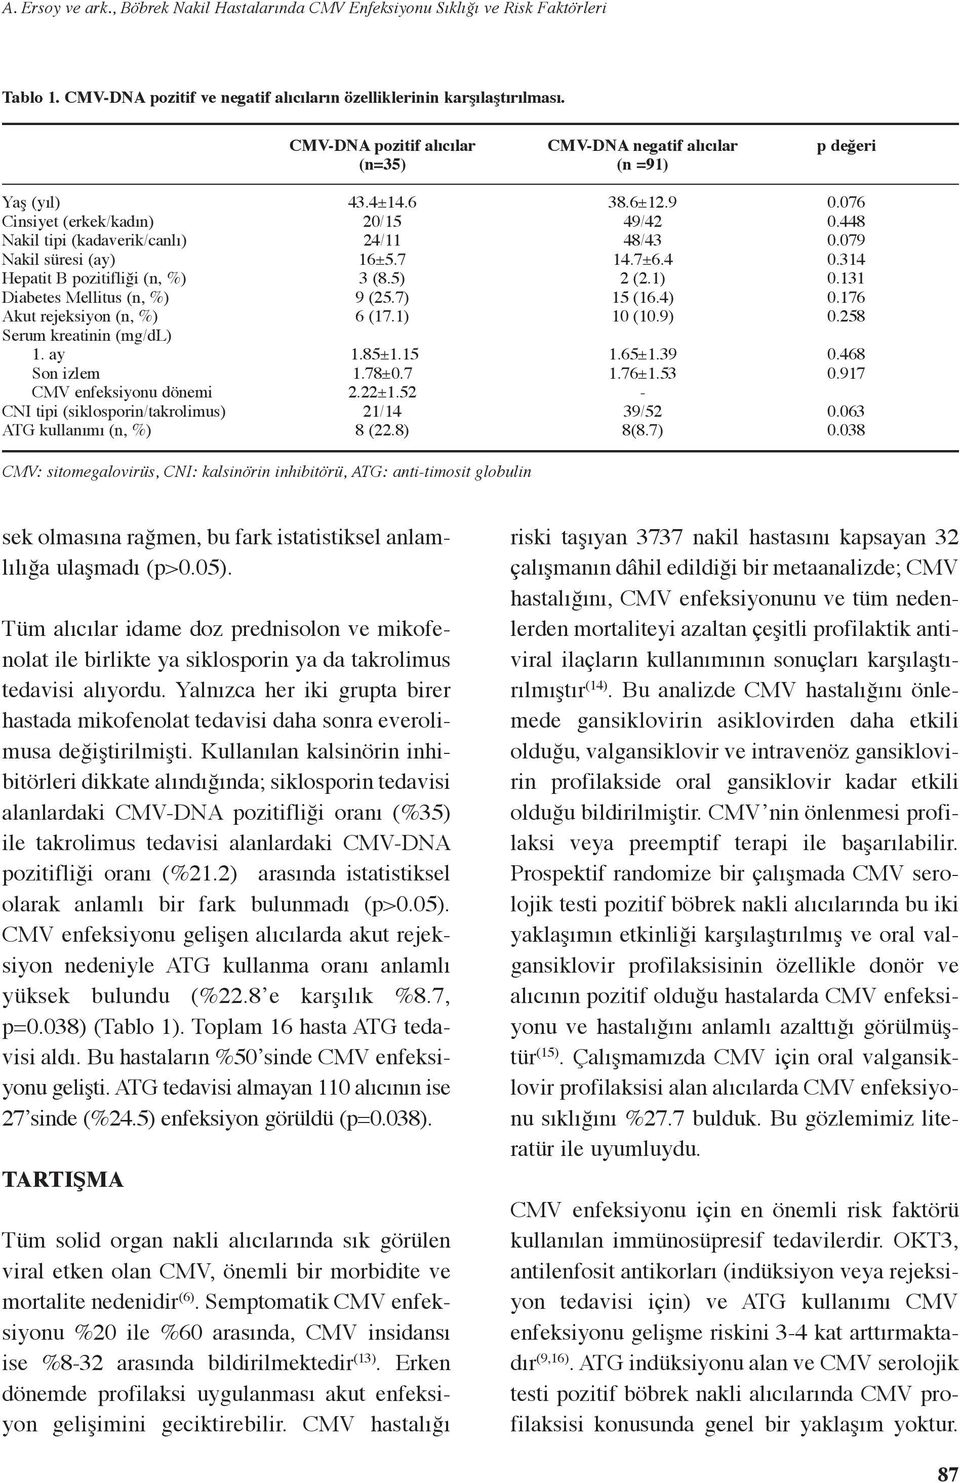 Mellitus (n, %) Akut rejeksiyon (n, %) Serum kreatinin (mg/dl) 1. ay Son izlem CMV enfeksiyonu dönemi CNI tipi (siklosporin/takrolimus) ATG kullanımı (n, %) 43.4±14.6 20/15 24/11 16±5.7 3 (8.5) 9 (25.